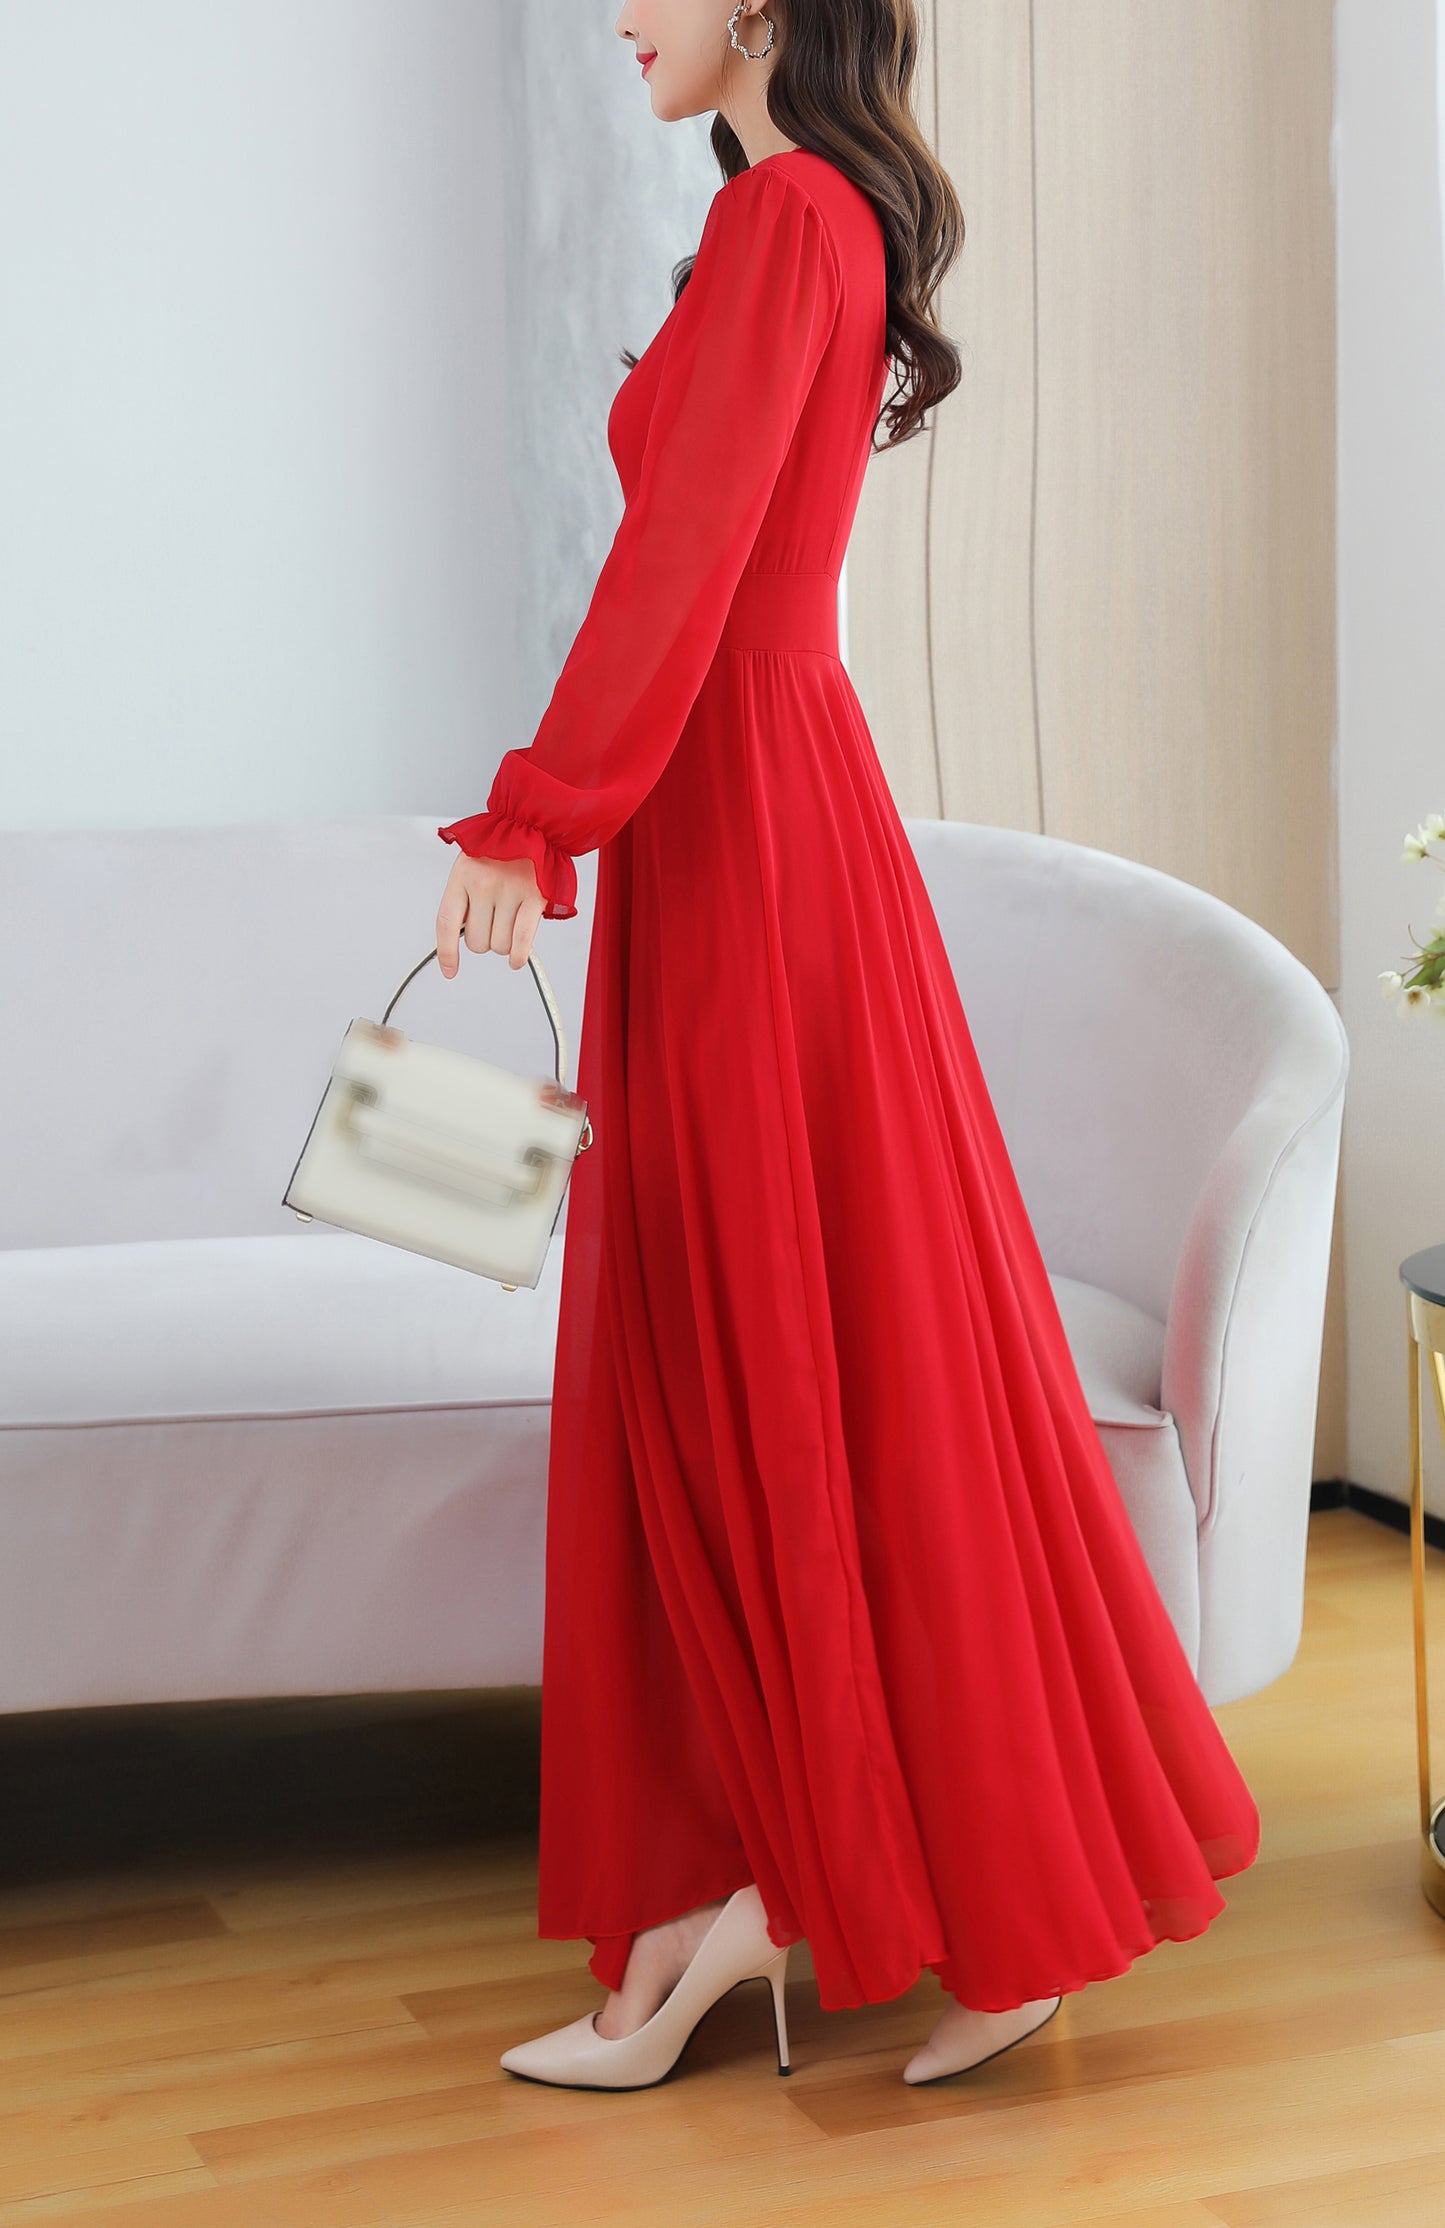 Classic Solid Color V-Neck Elegant Wedding Maxi Dress